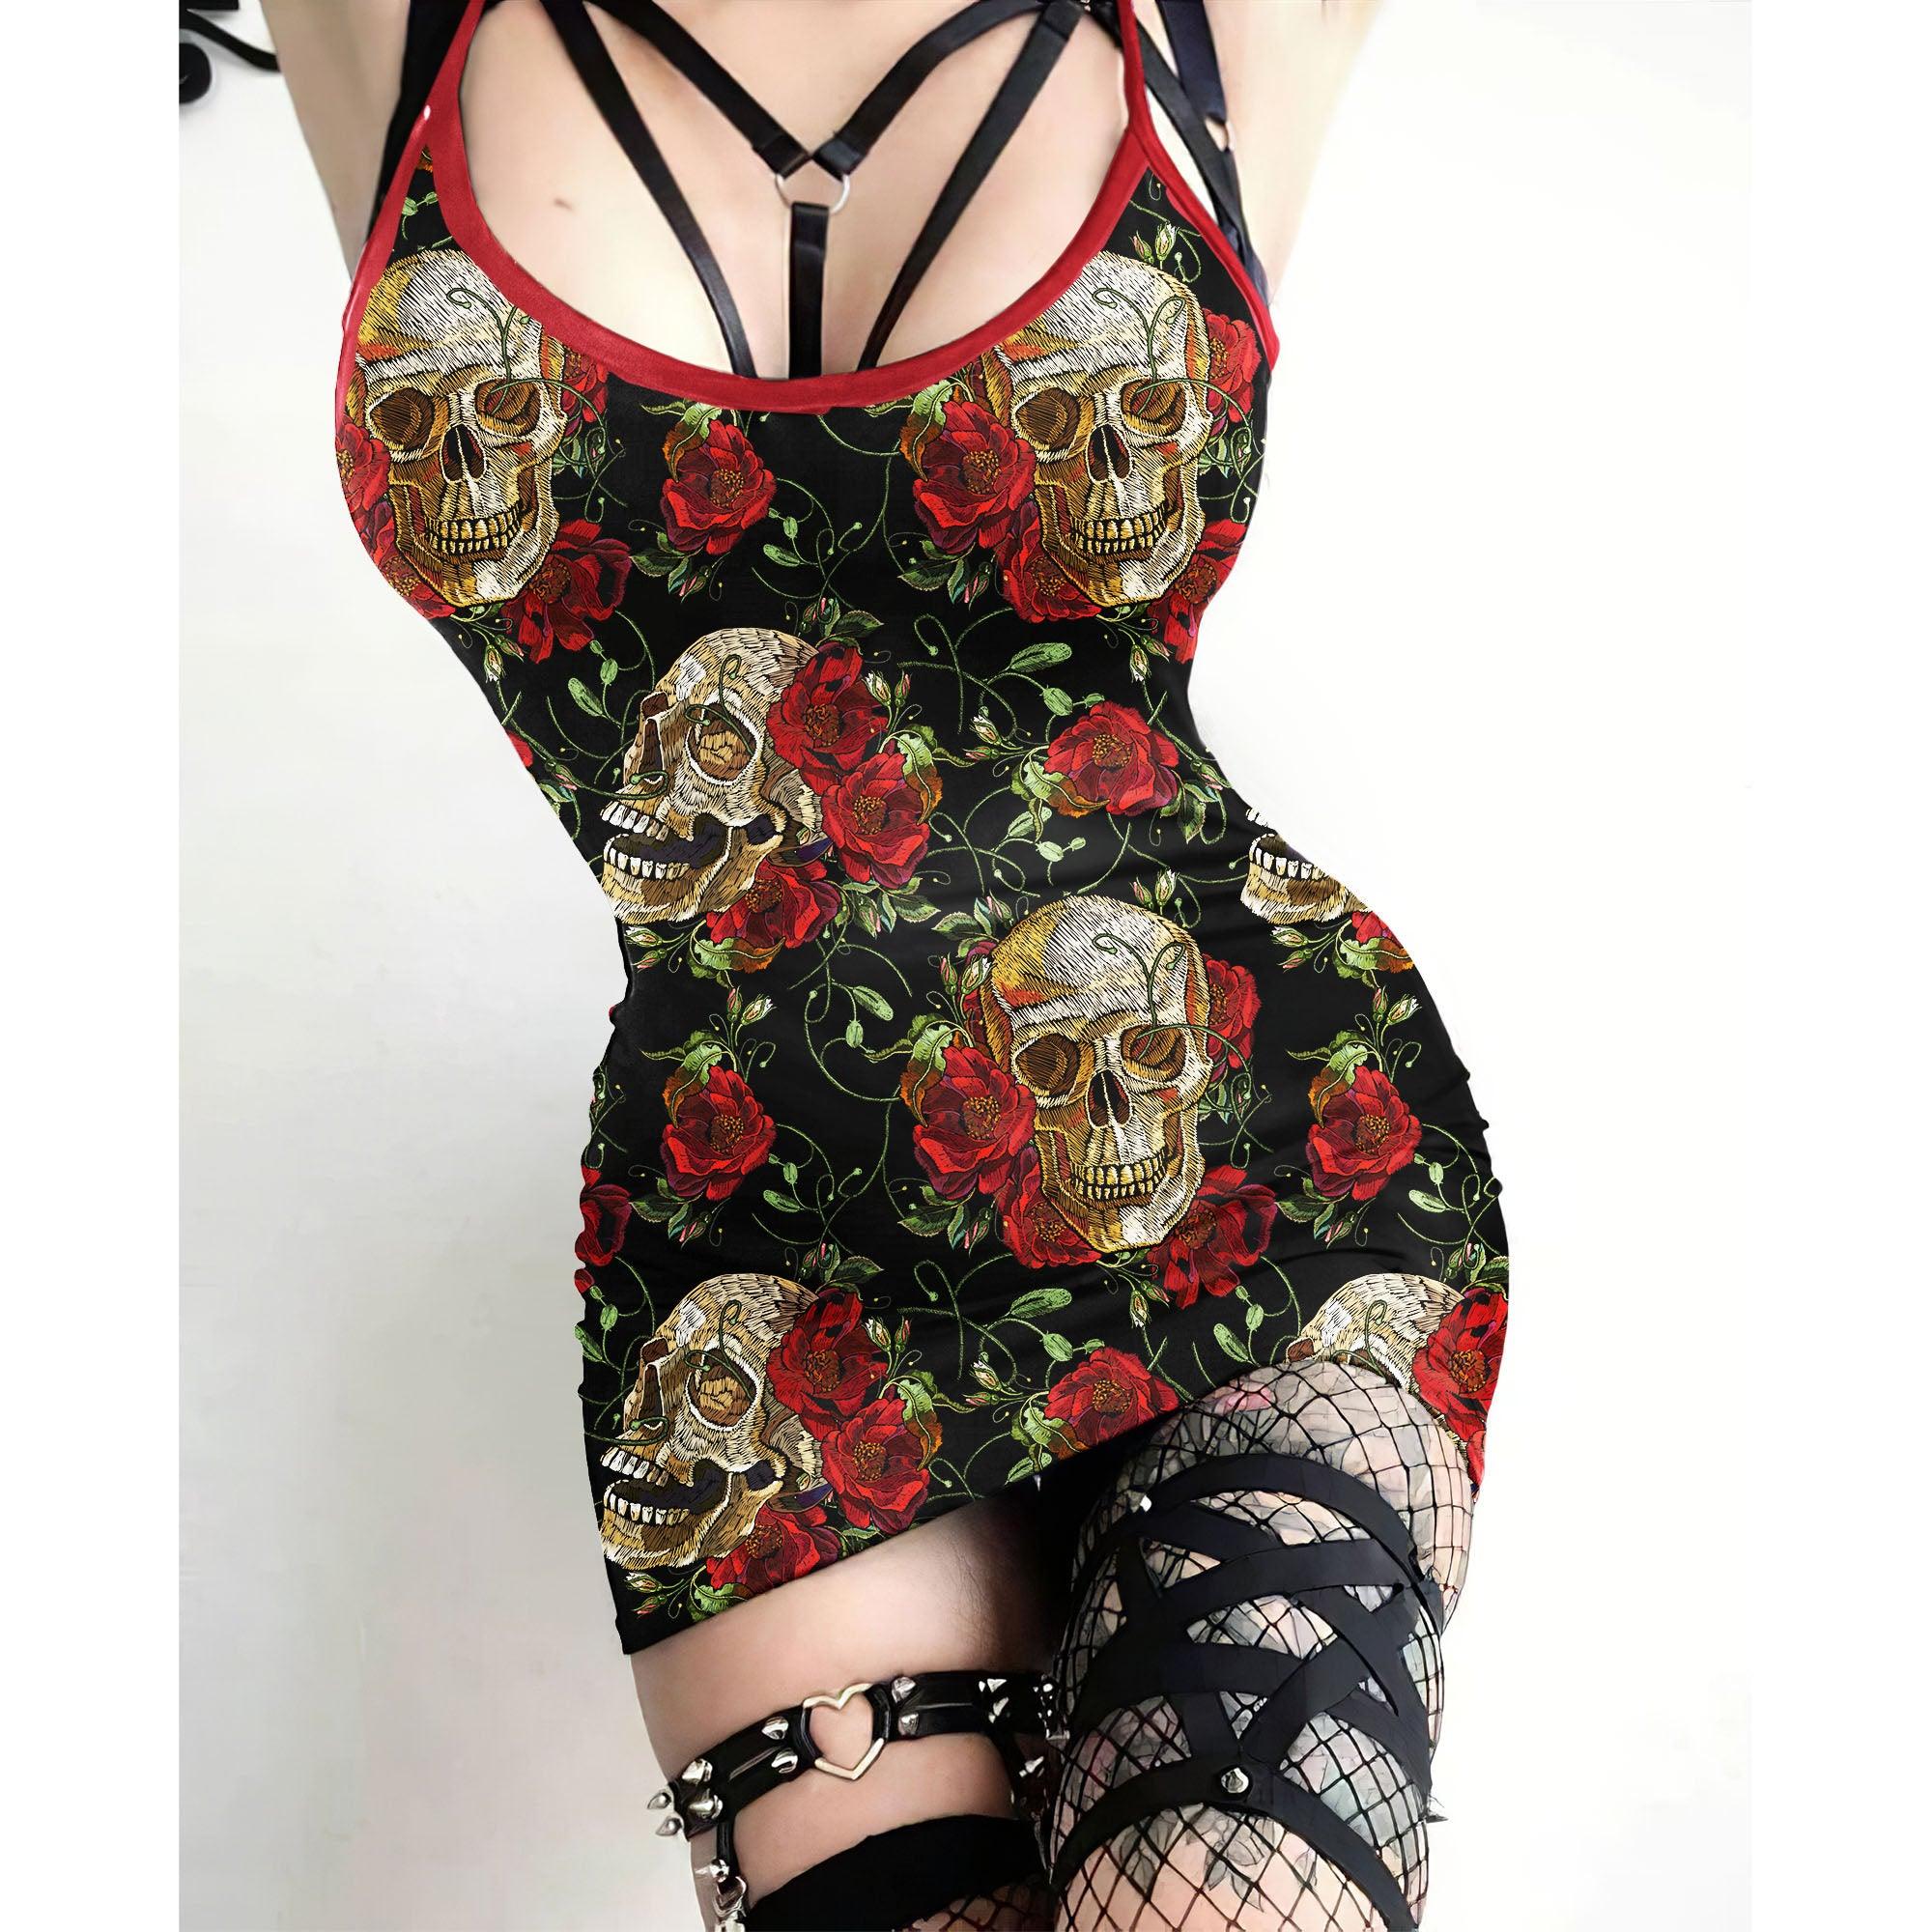 Red Skull Flower Pattern Printed Body Dress, Naughty Sleeveless Minidress For Women-Wonder Skull